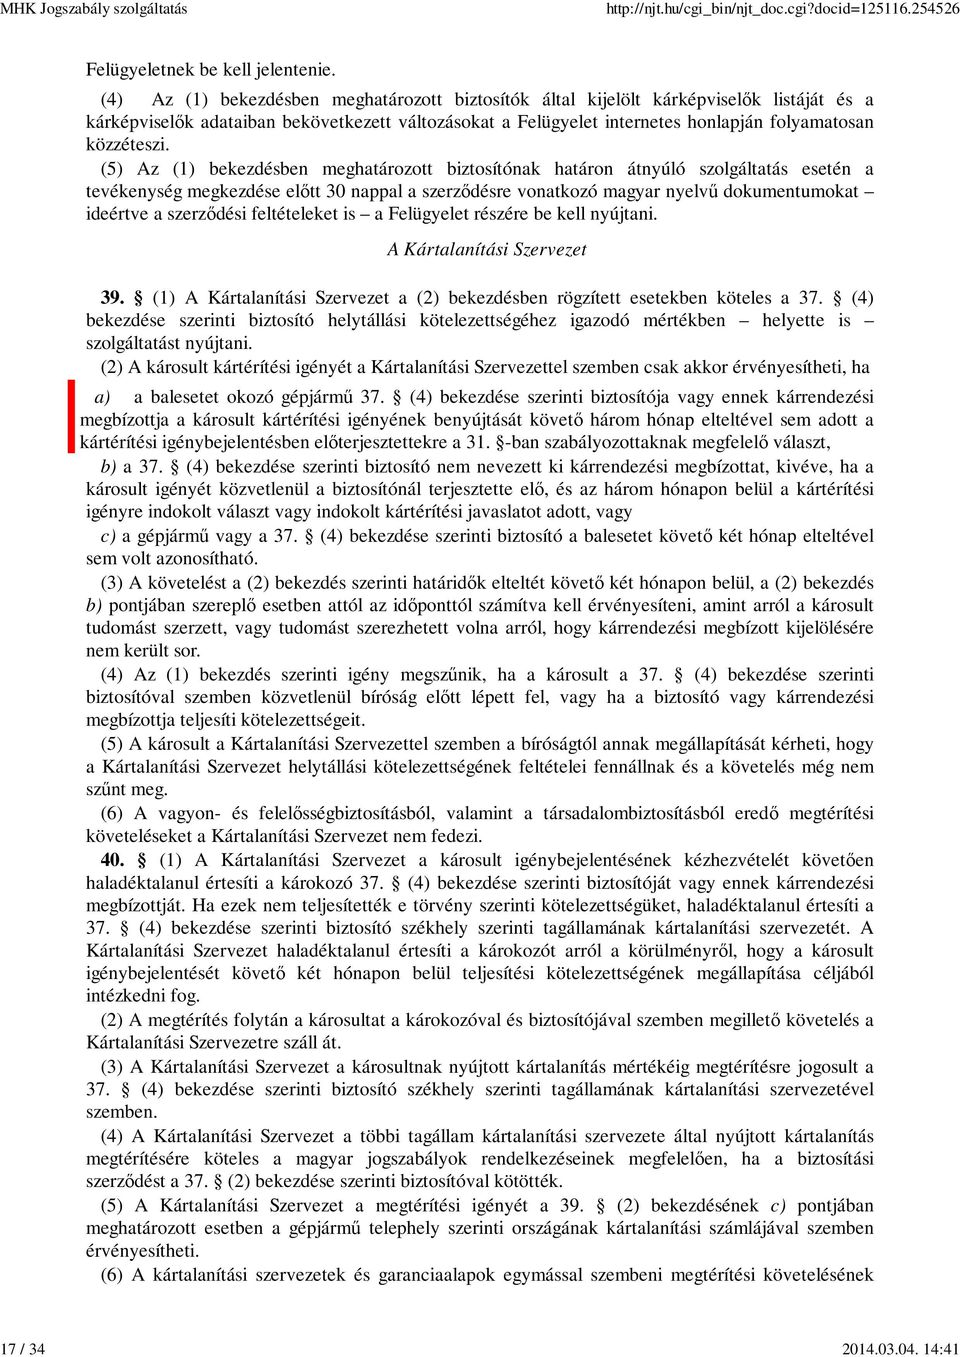 (5) Az (1) bekezdésben meghatározott biztosítónak határon átnyúló szolgáltatás esetén a tevékenység megkezdése előtt 30 nappal a szerződésre vonatkozó magyar nyelvű dokumentumokat ideértve a